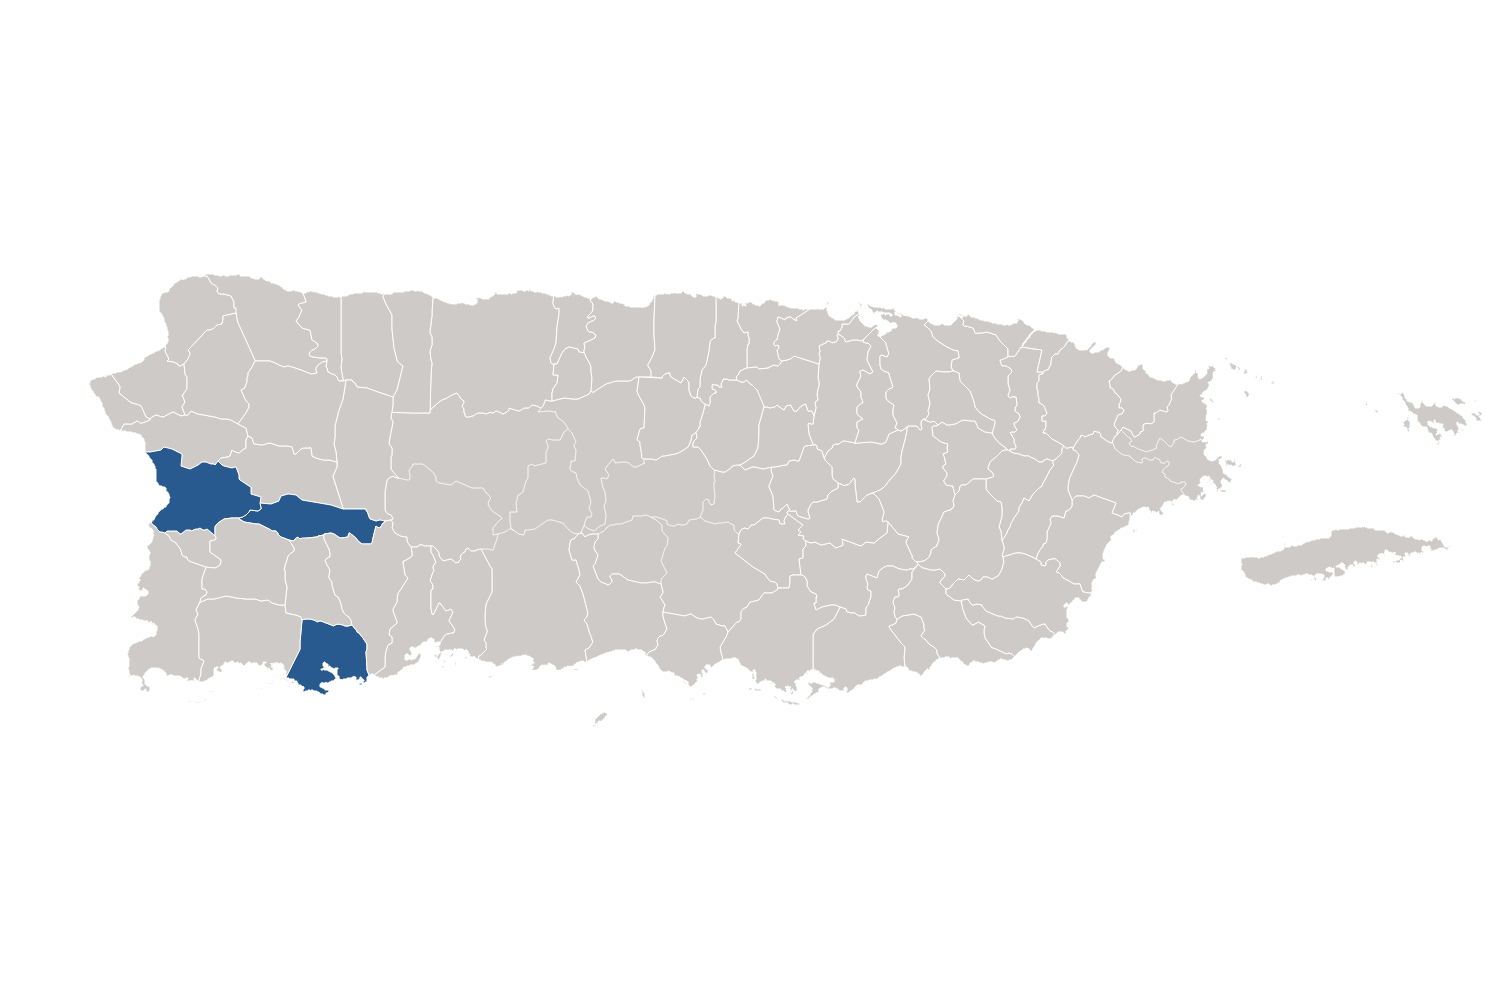 Image of southwest Puerto Rico